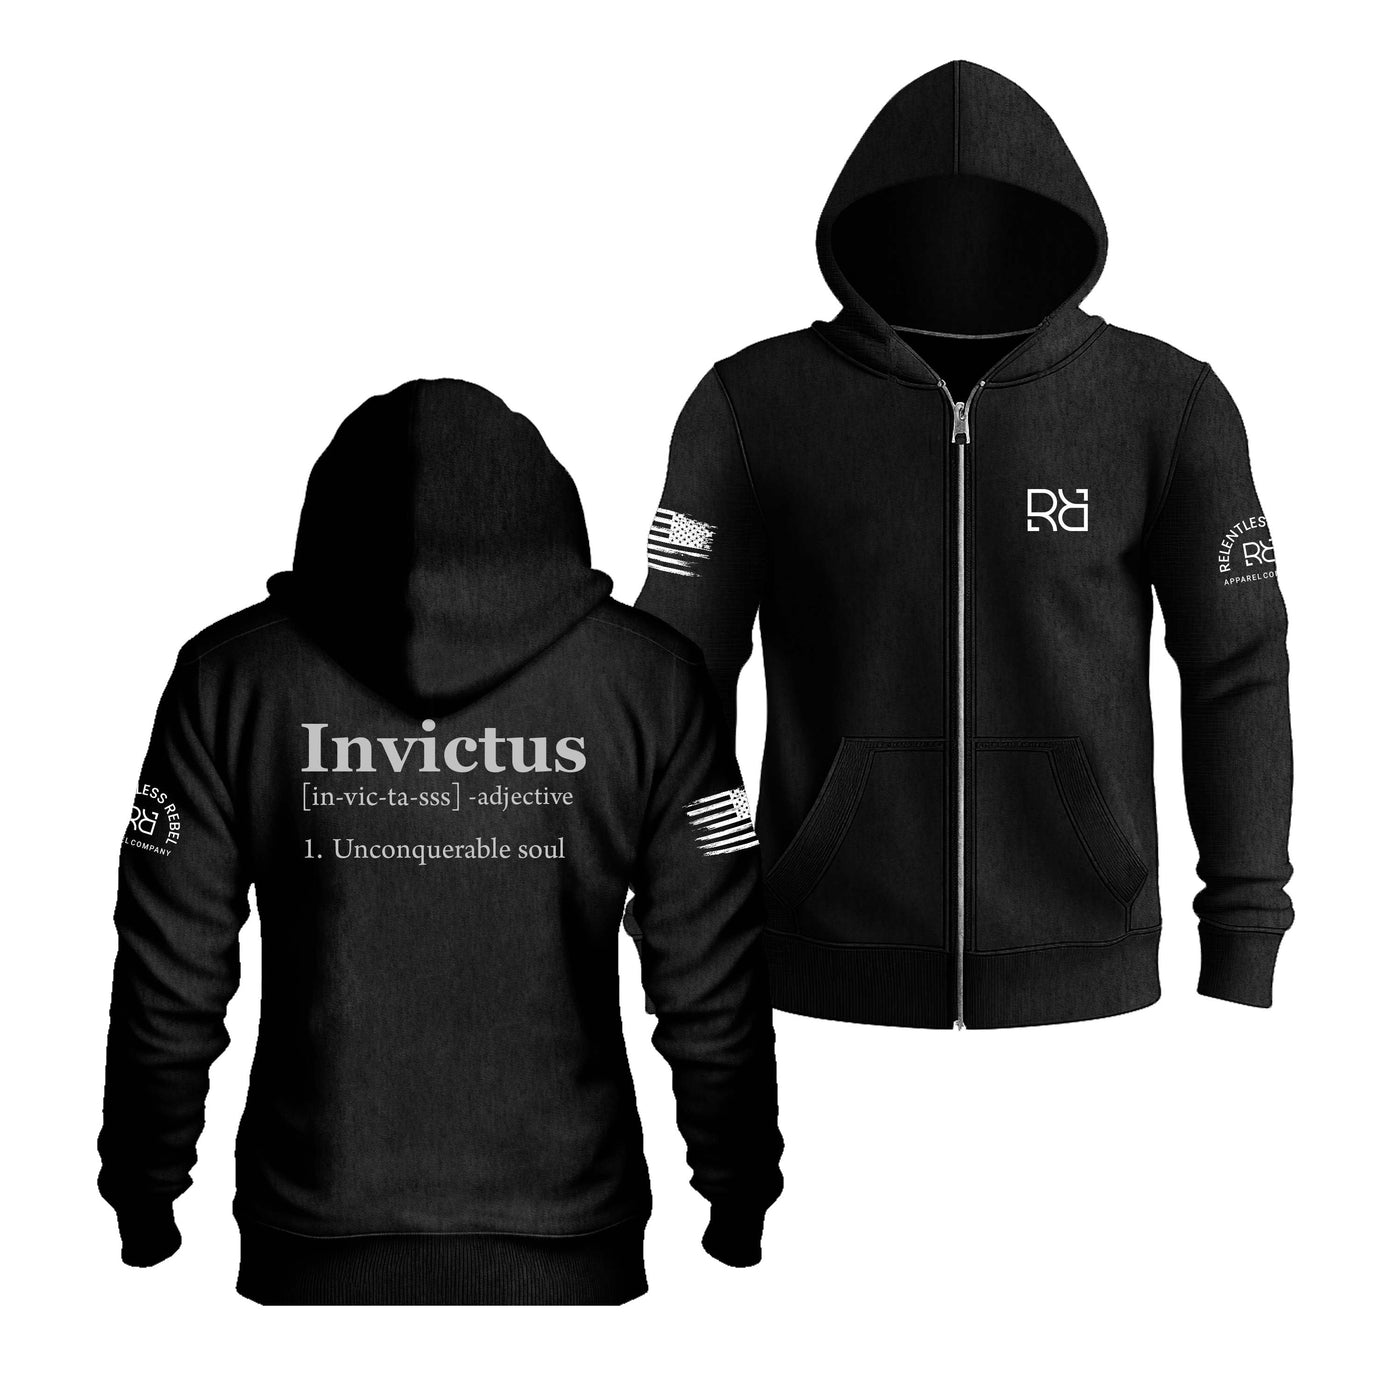 Solid Black Invictus Back Design Zip Up Hoodie